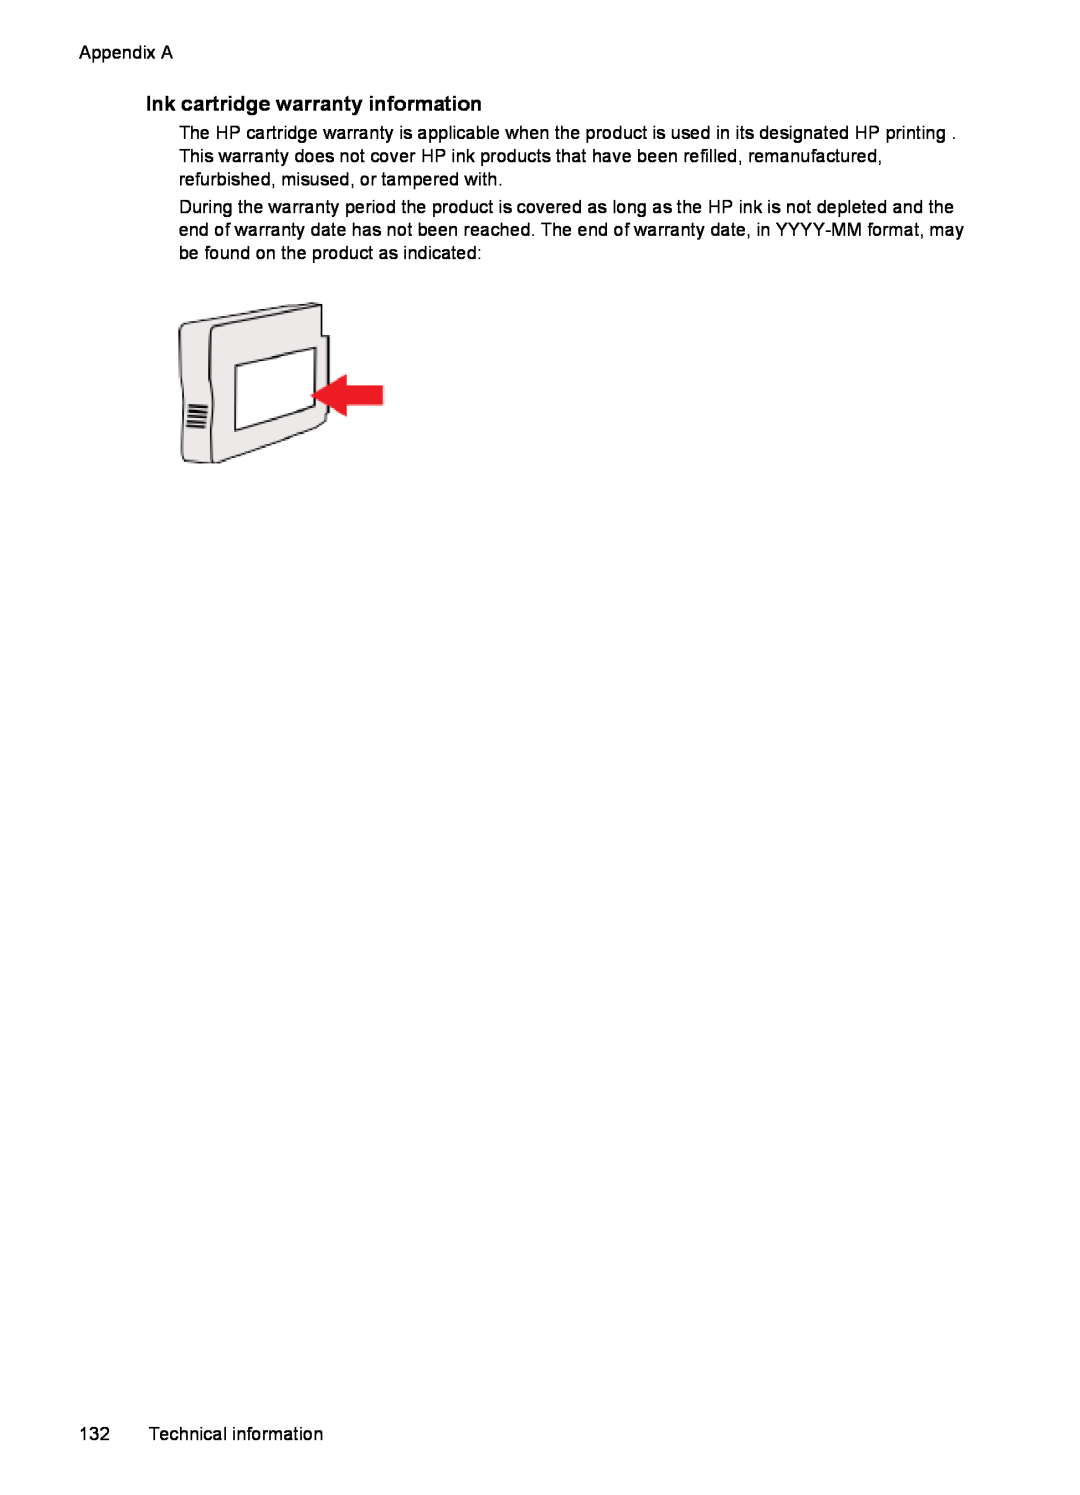 HP 6600 - H7 manual Ink cartridge warranty information 